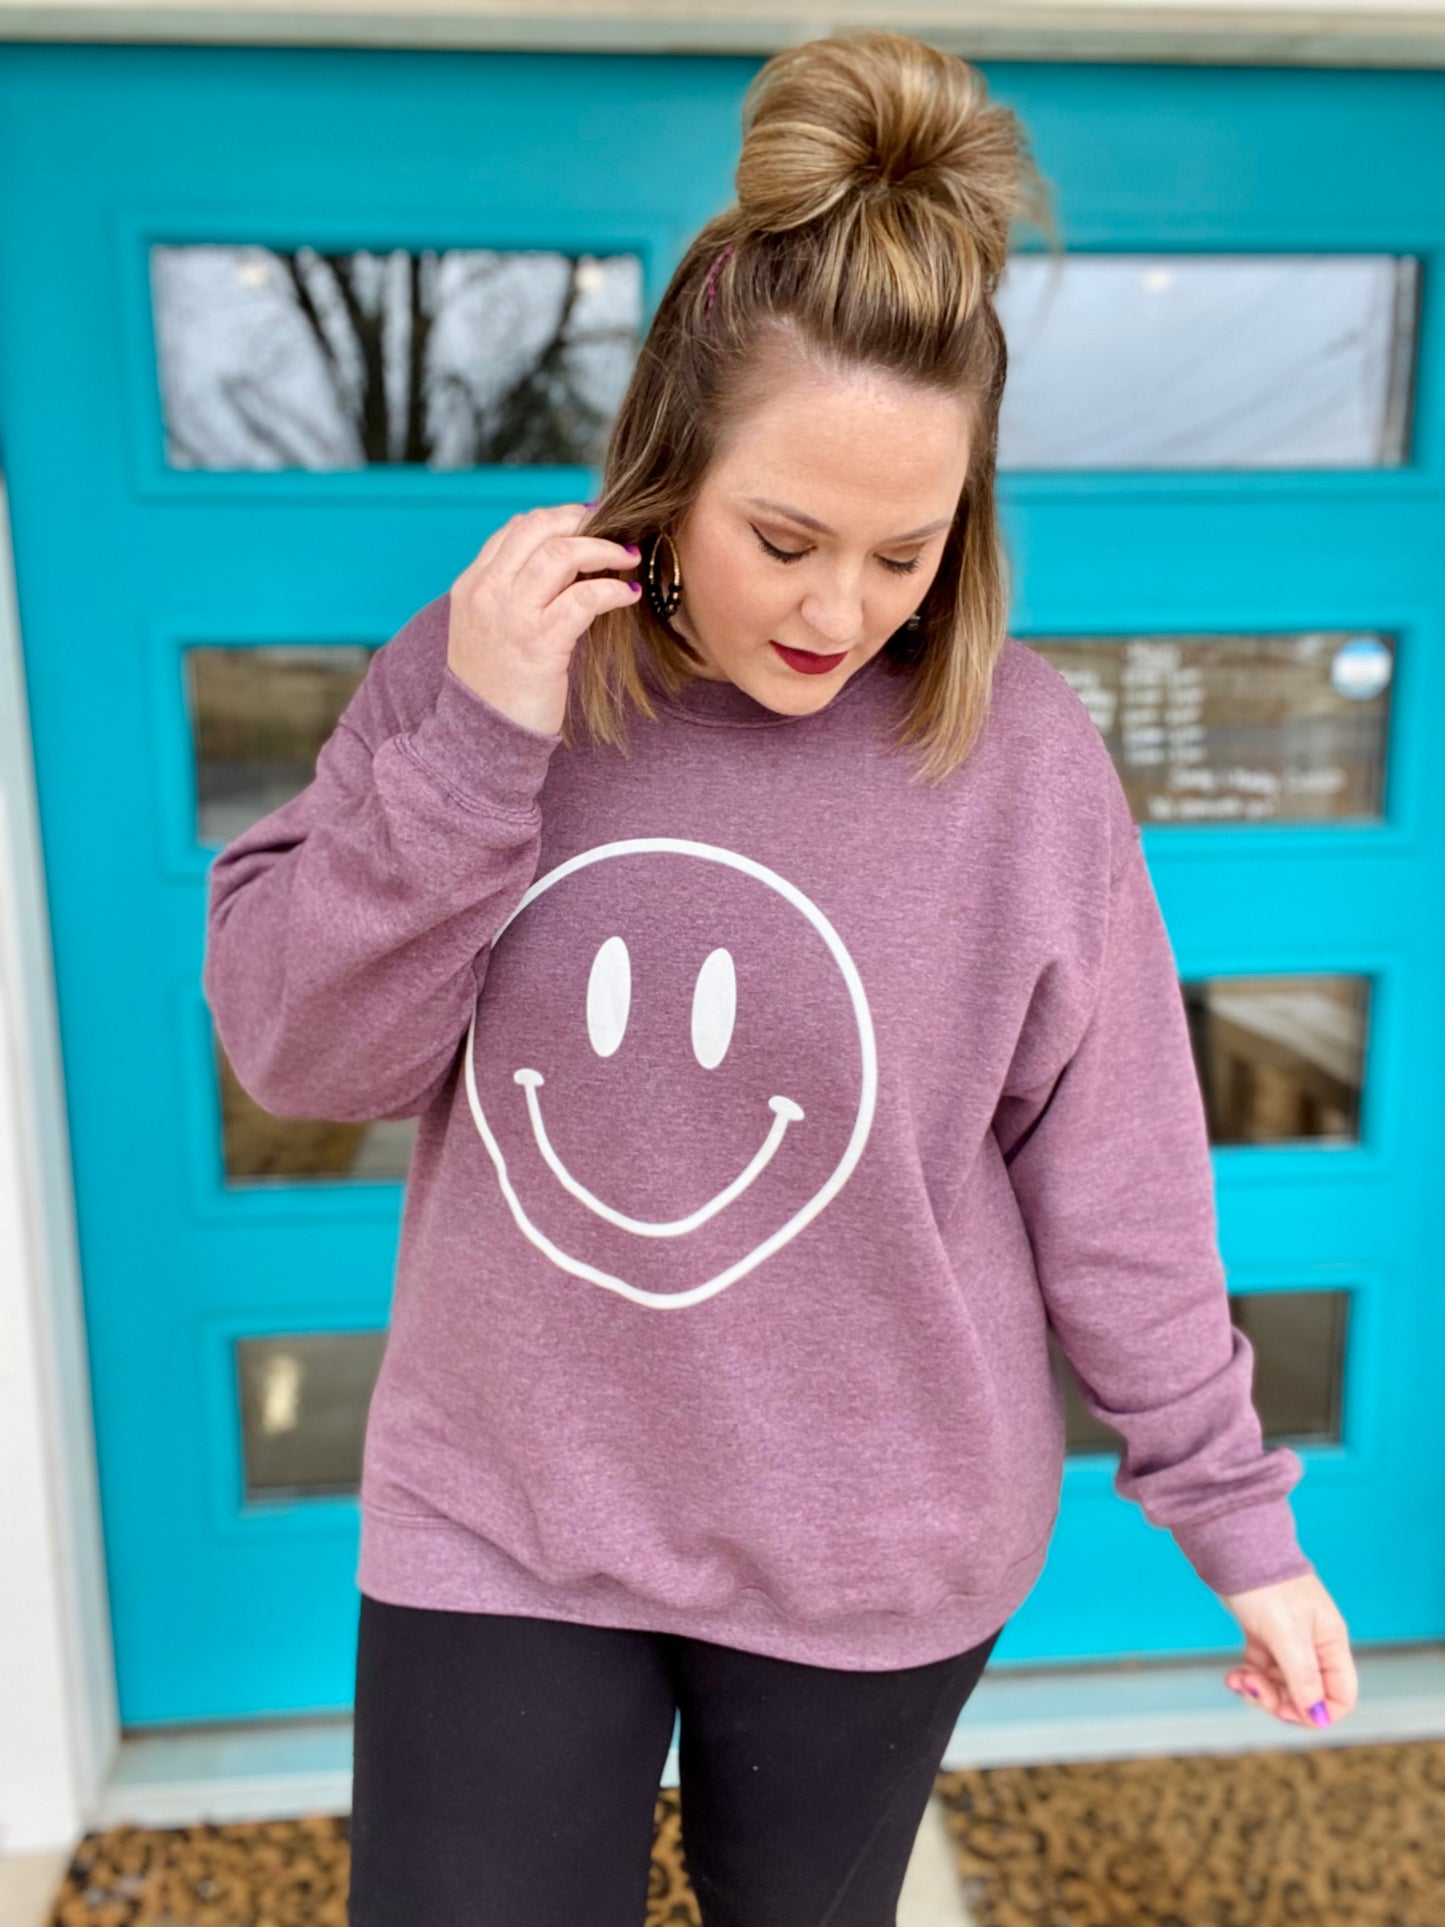 Smiley Face Sweatshirt